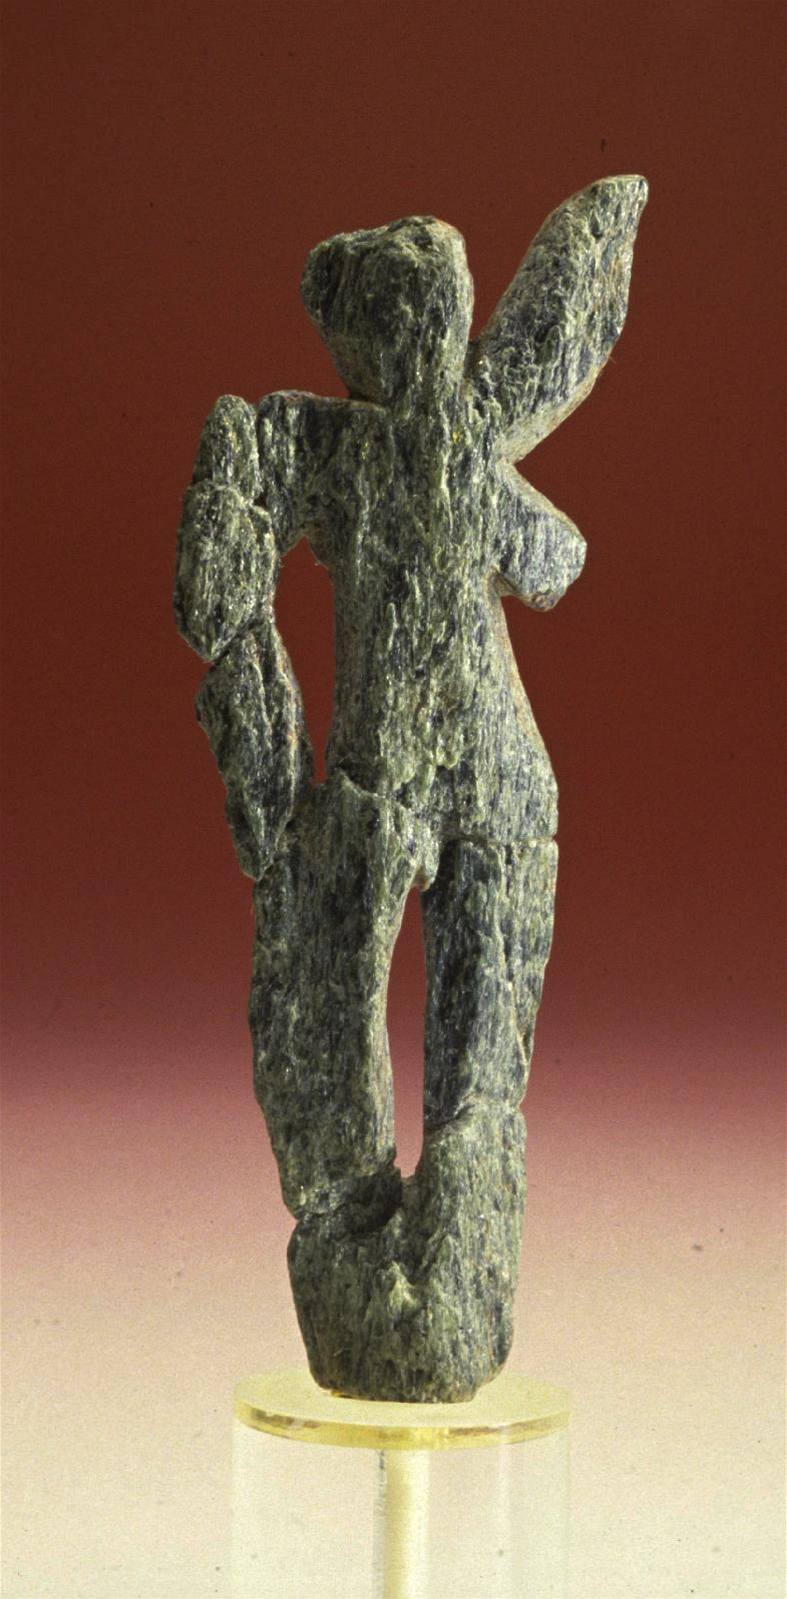 enská postava zvaná Fanny, bidlice, Stratzing, aurignacien, stáí 35 000 let, Naturhistorisches Museum Wien